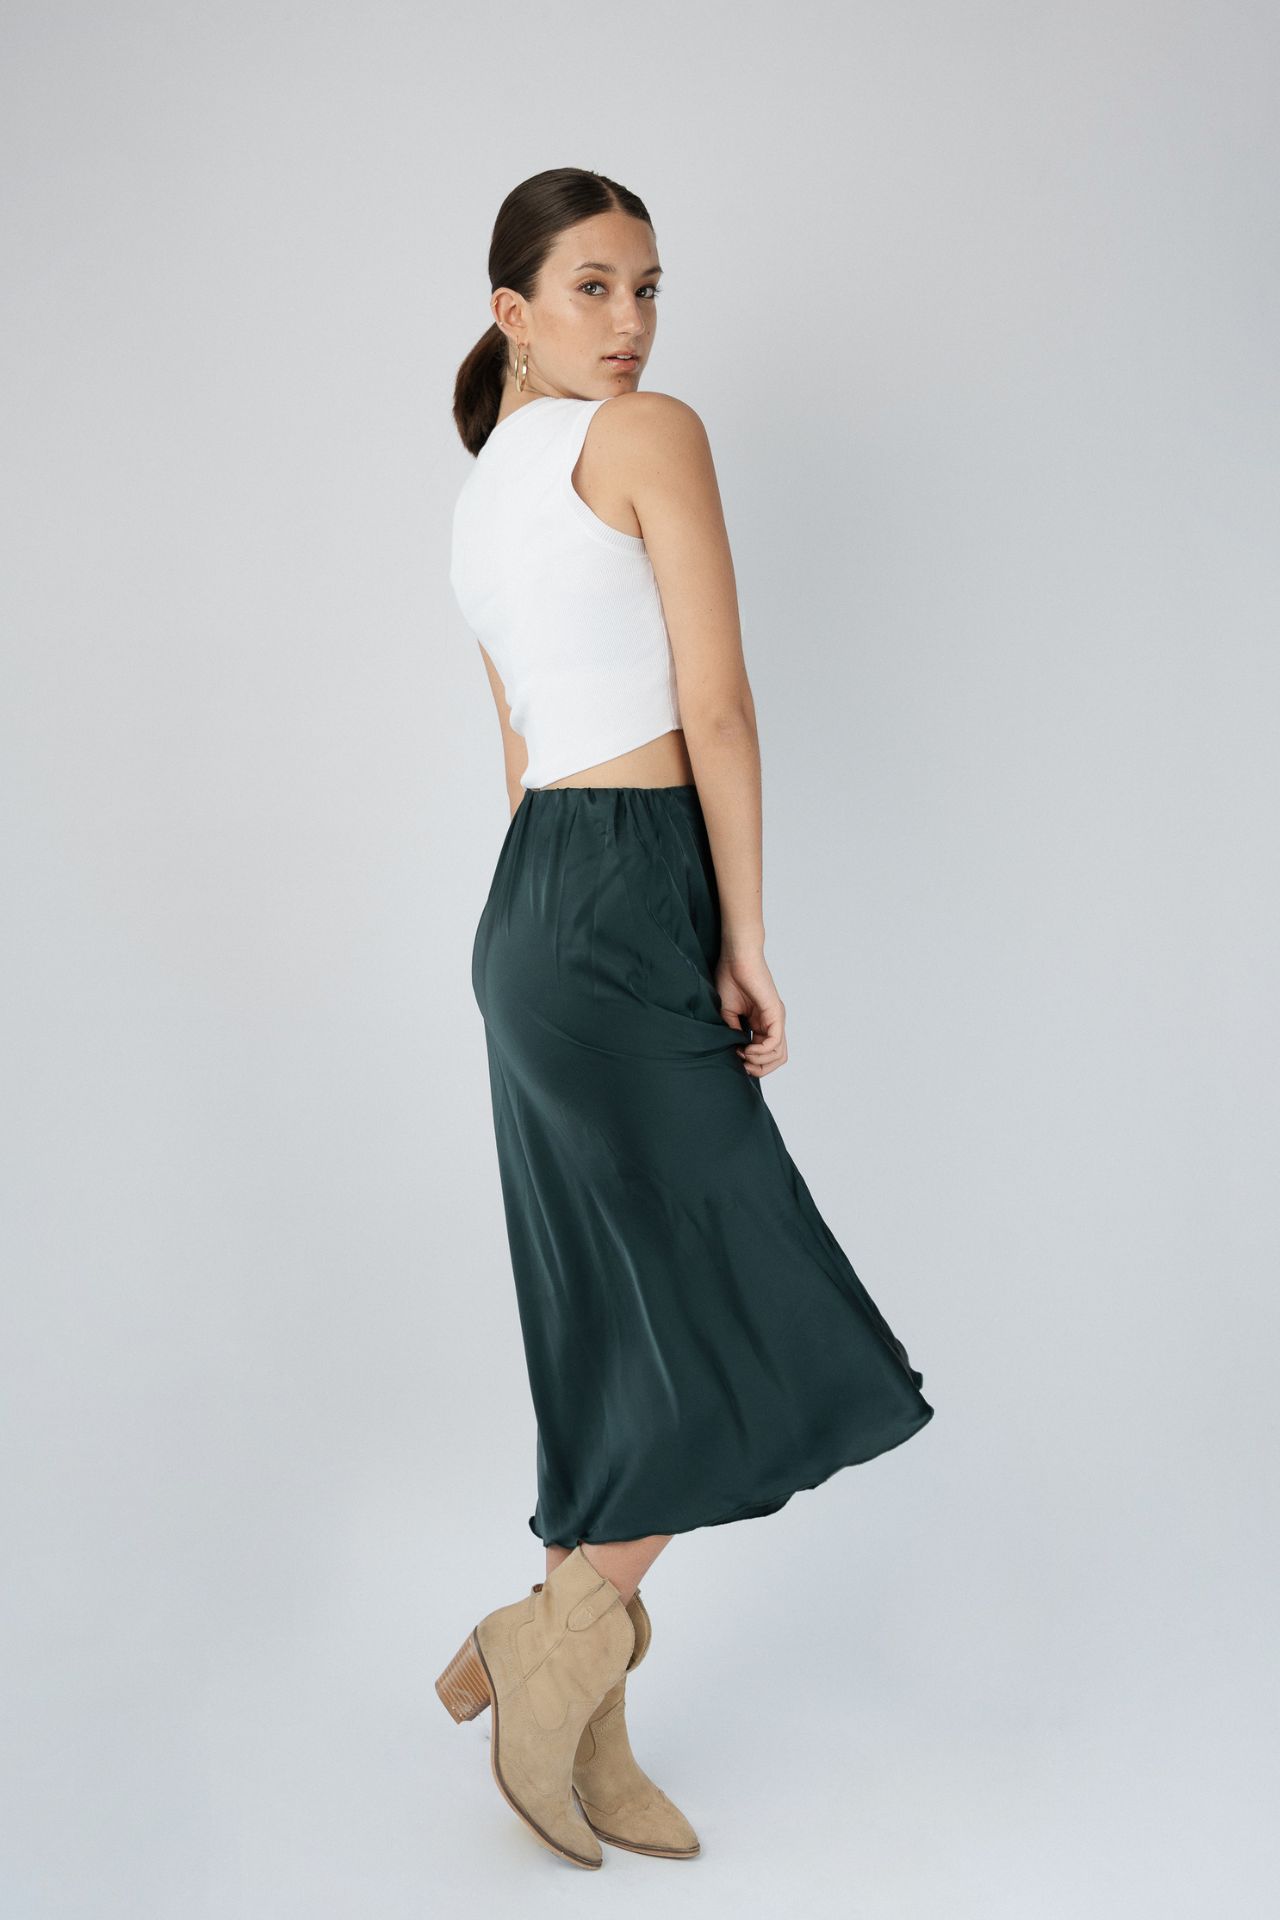 Falda midi recta con elastico en la cintura material seda en color verde,azul y nude.
